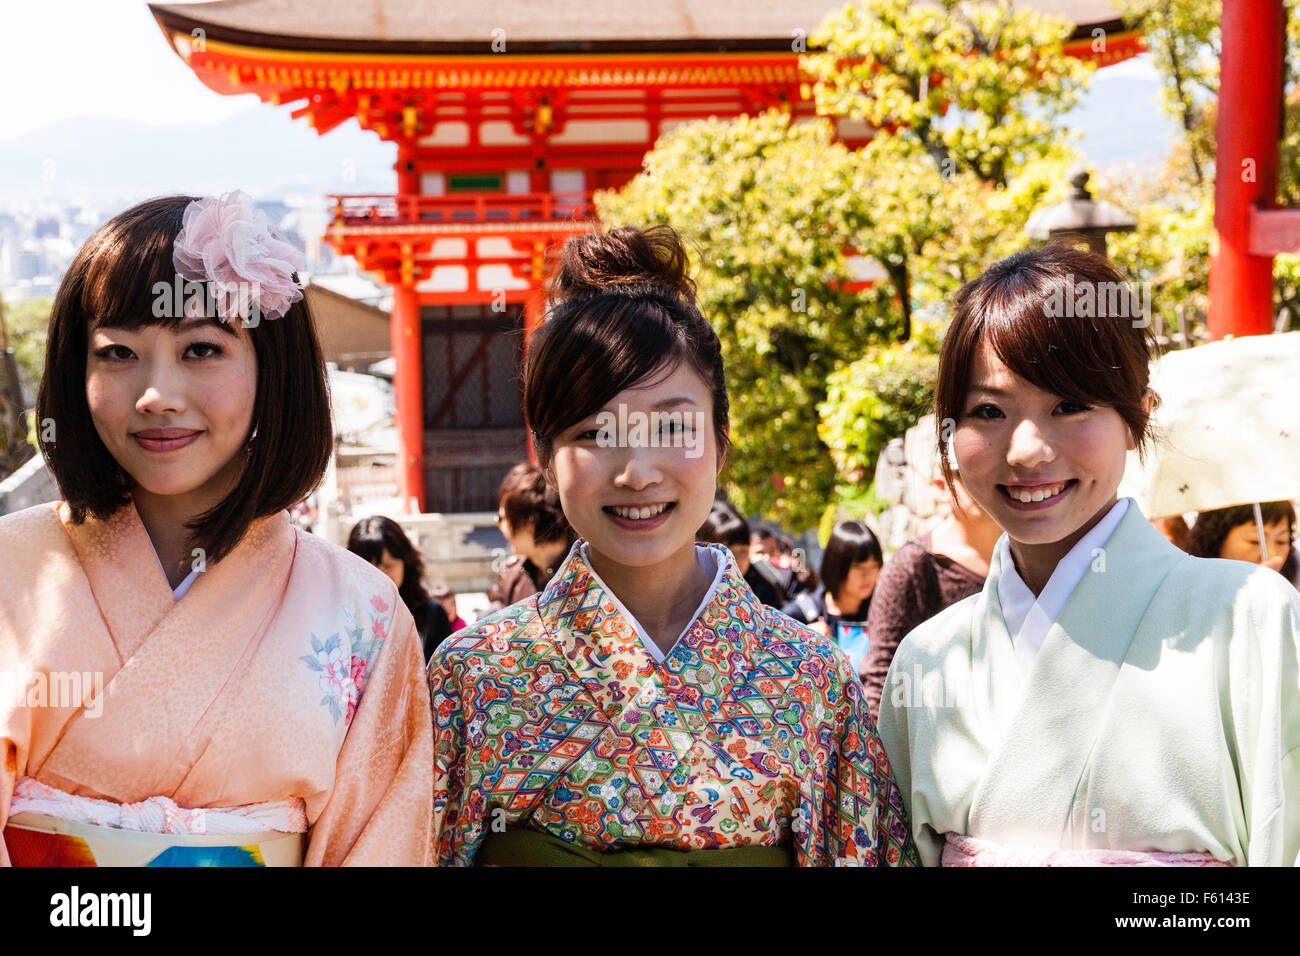 Le Japon, Kyoto, temple Kiyomizu dera. Trois jeunes femmes japonaises en kimono, smiling at viewer avec le Deva Gate derrière eux. Tourné la tête et des épaules. Banque D'Images